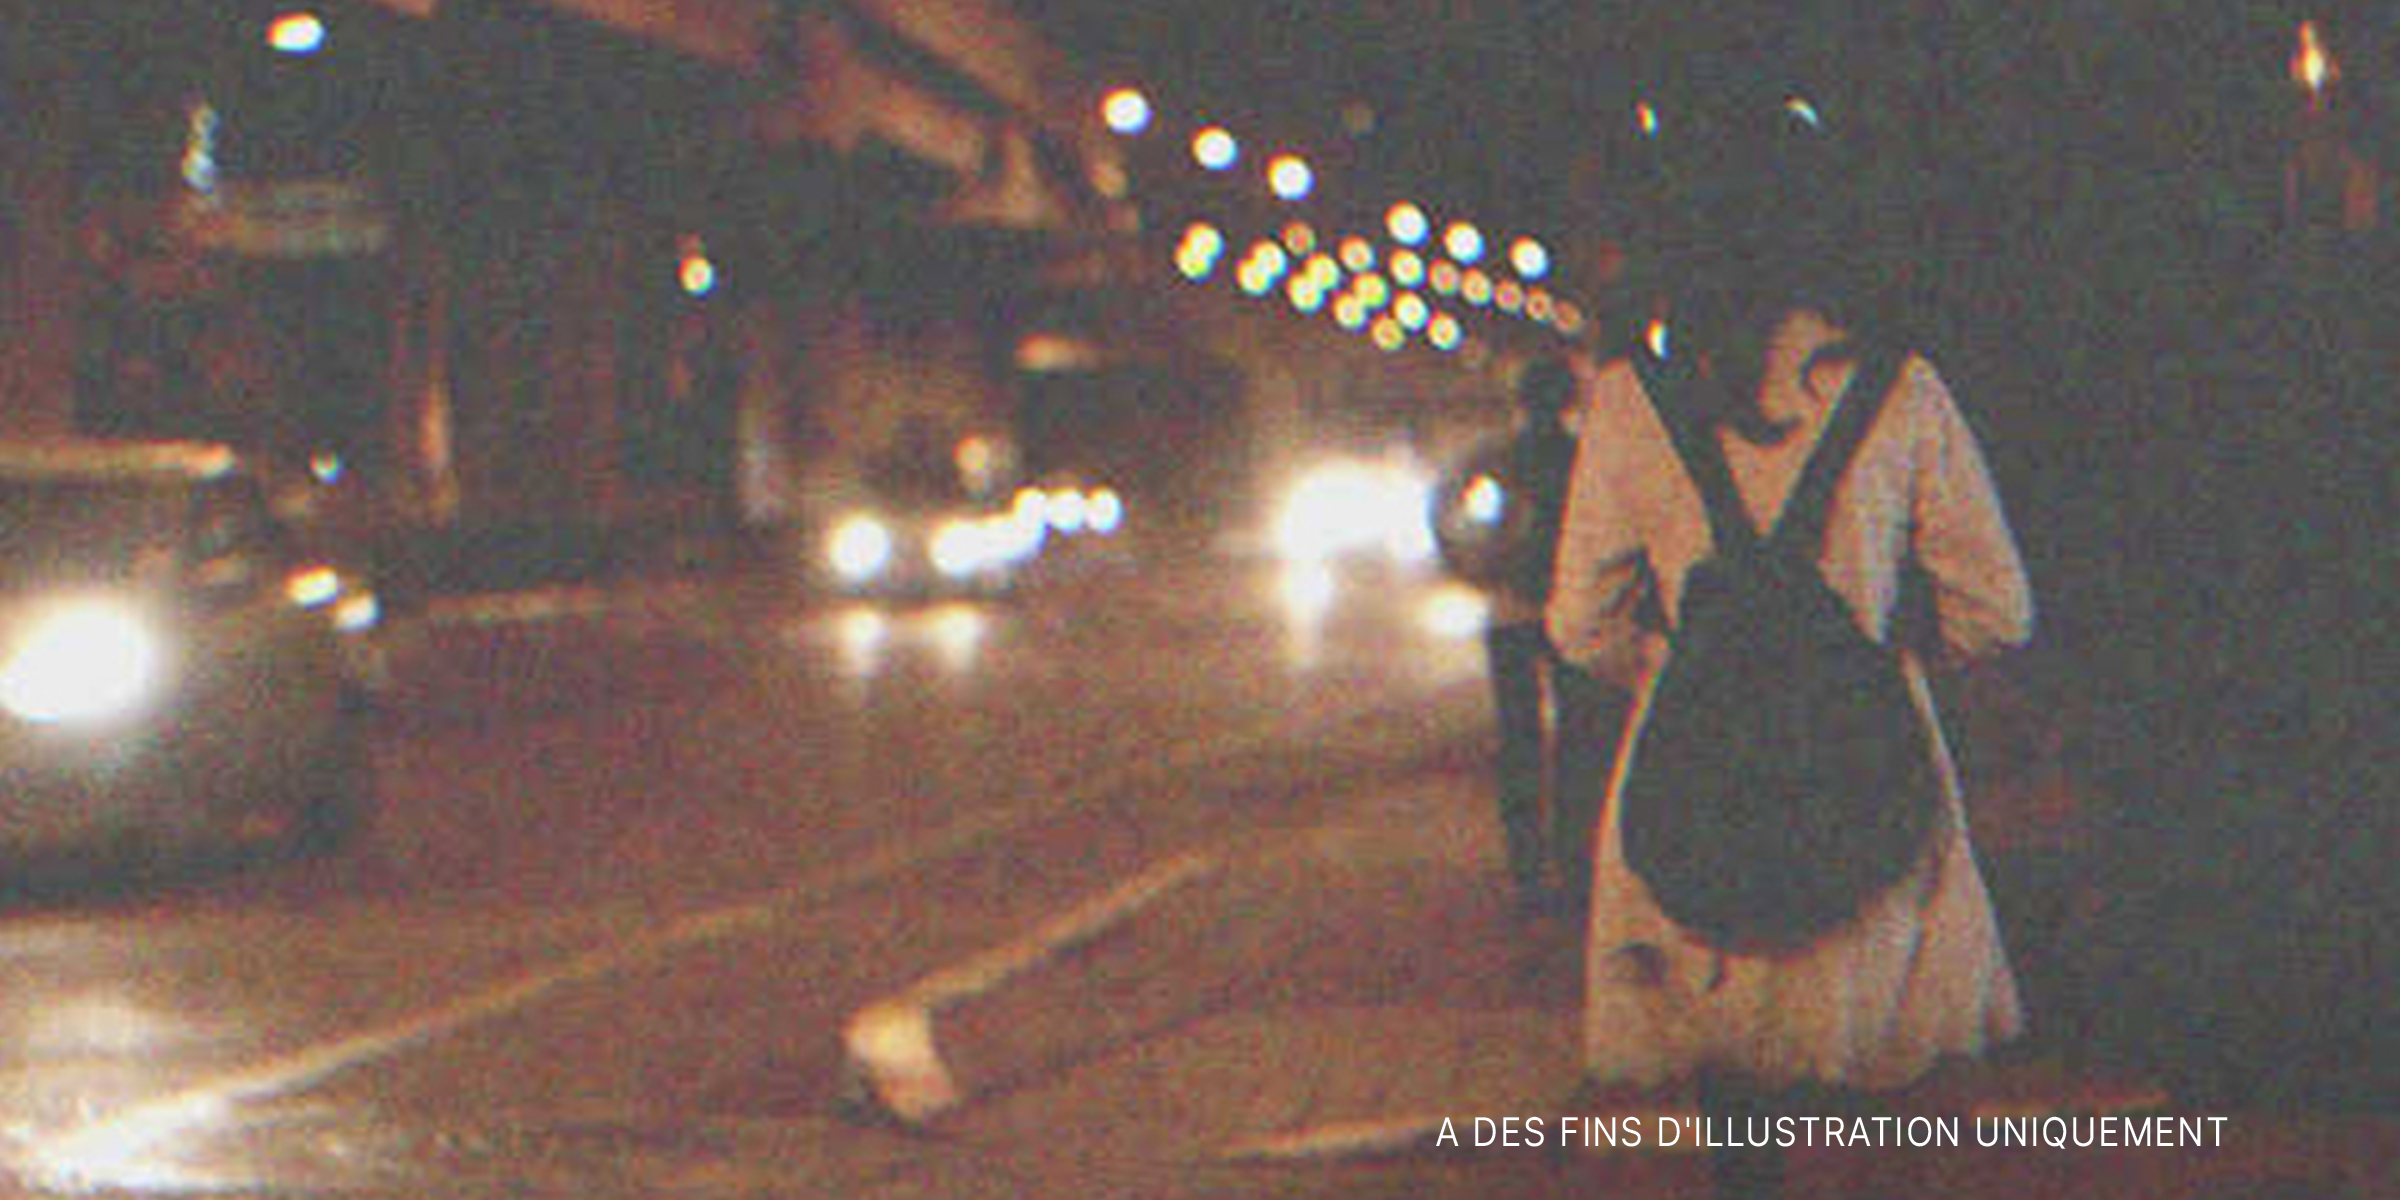 Une femme marchant seule dans la rue le soir | Source : Shutterstock.com